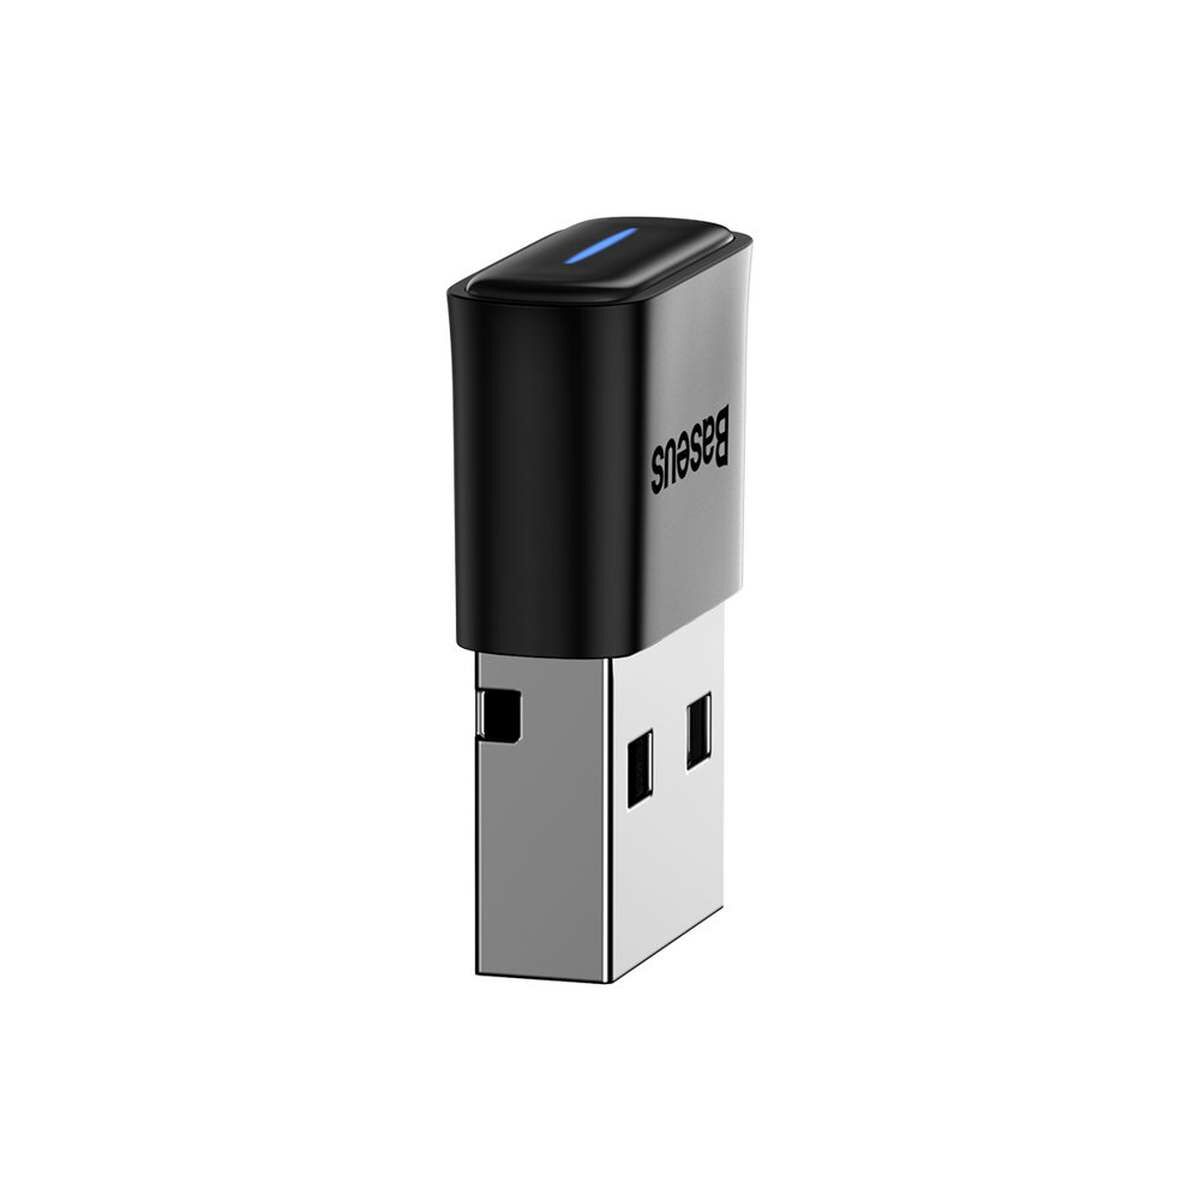 Kép 5/20 - Baseus HUB BA04 mini Bluetooth 5.0 adapter USB számítógépes vevőegység és transmitter, fekete (ZJBA000001)